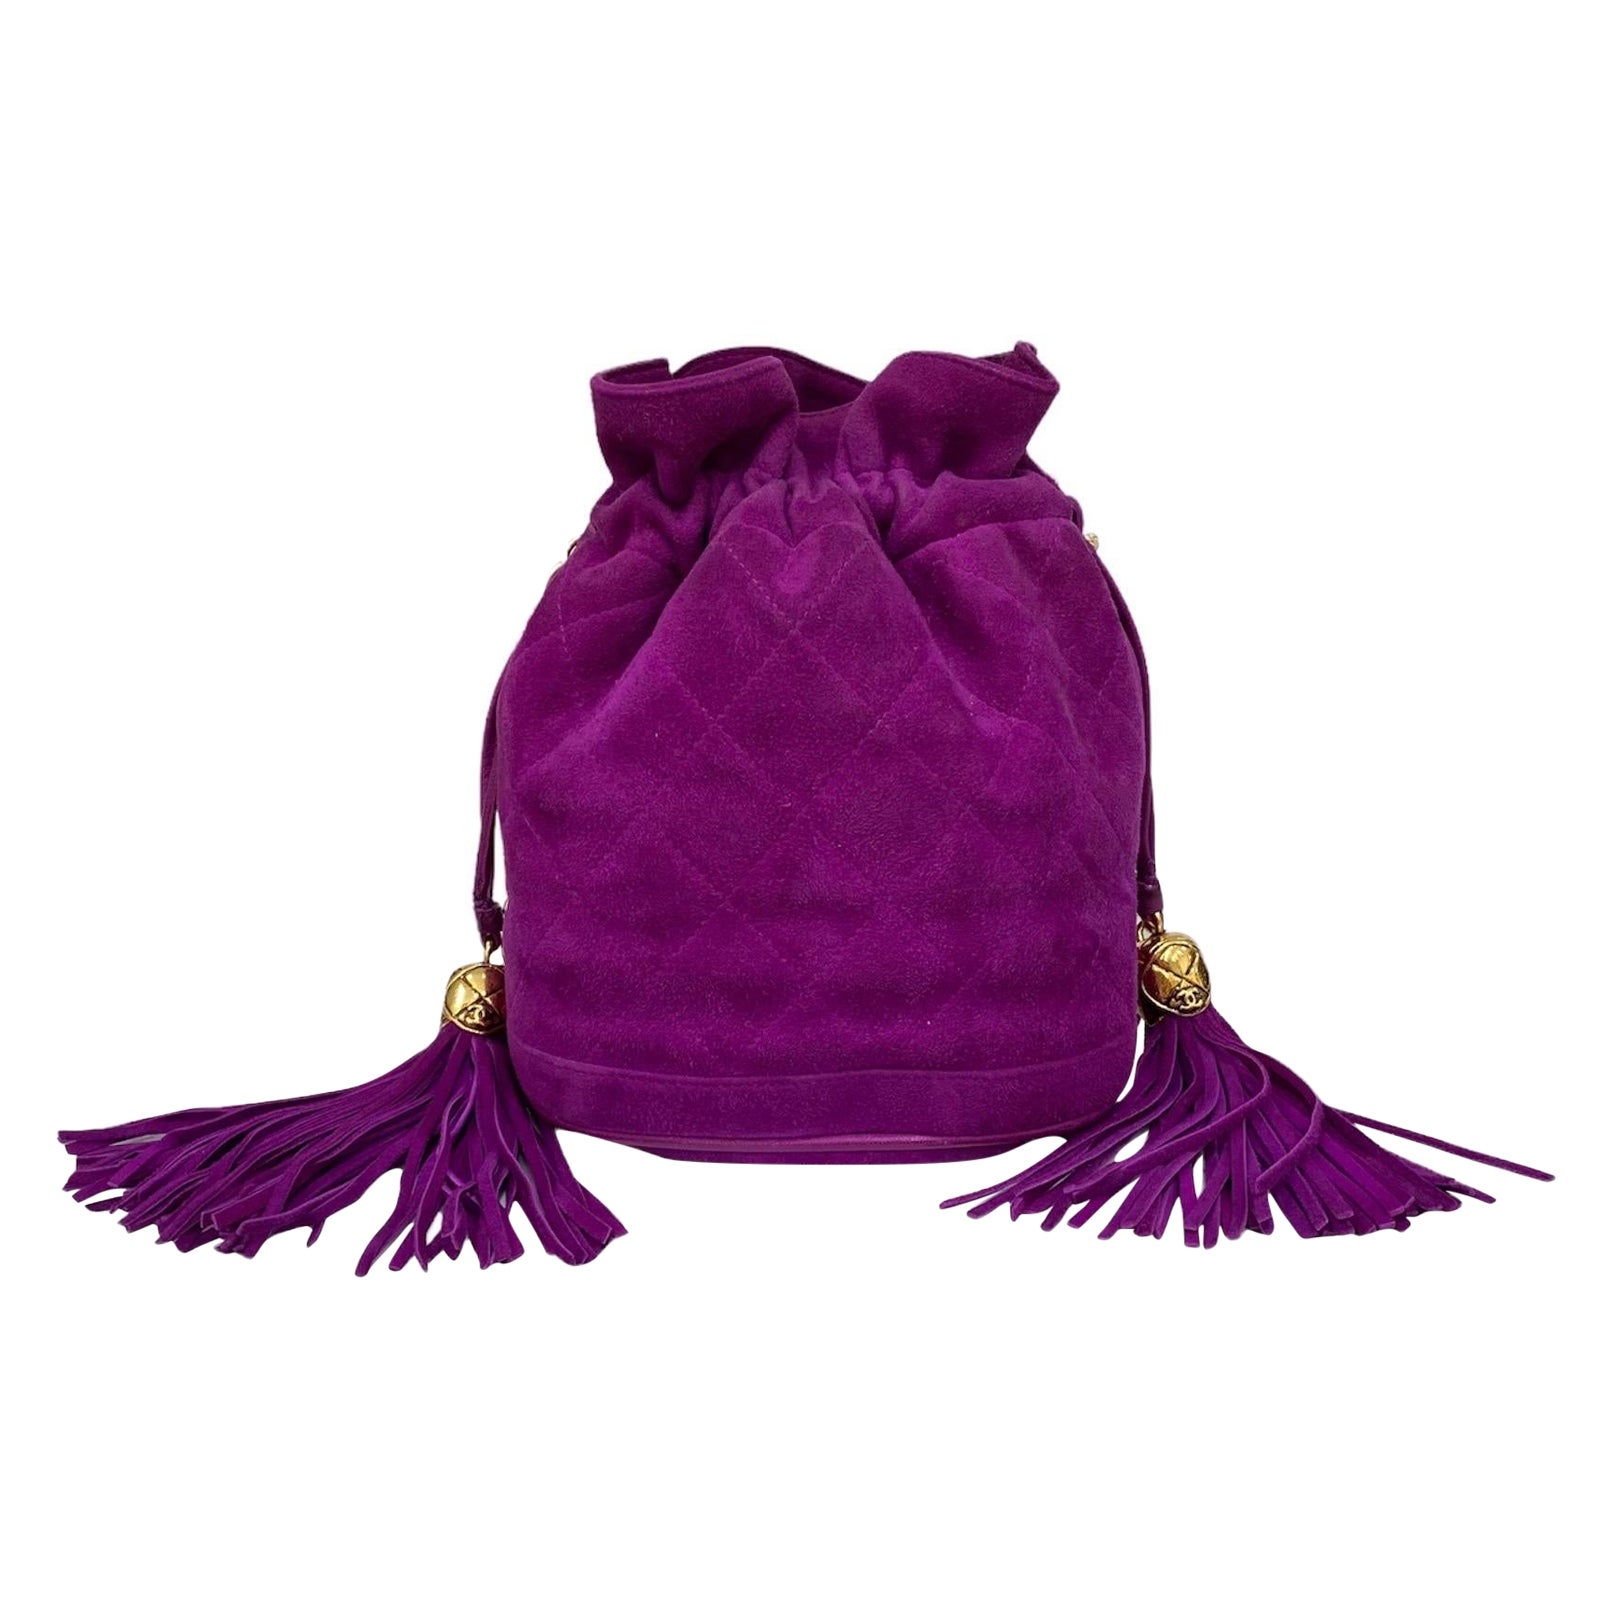 Chanel Purple Leather Wild Stitch Silver Tone Chain Small Shoulder Bag ...